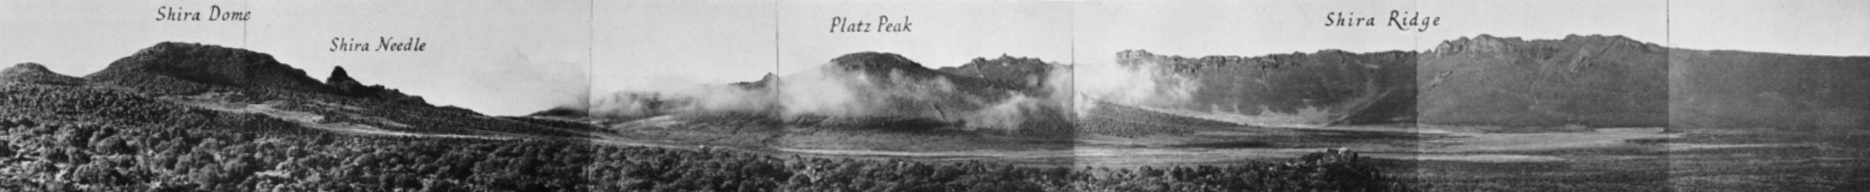 Das Shira Platau 1948.Mit dem zentralem Platz Kegel - hier Platz Peak genannt. Aus Einzelaufnahmen von Georg Salt [3]